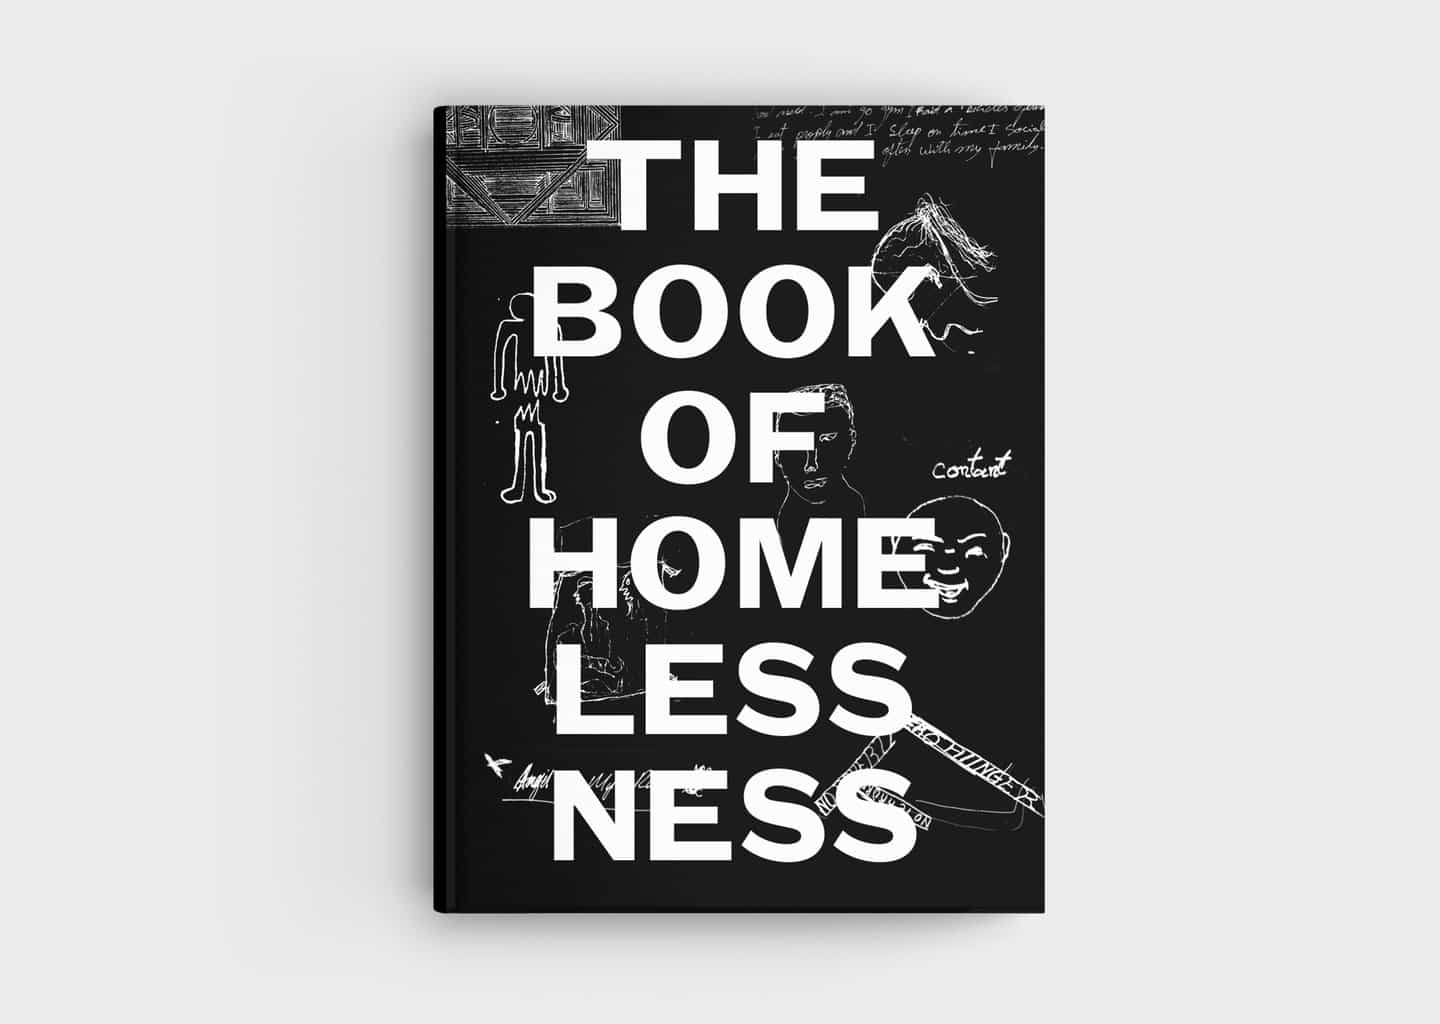 El libro de la falta de vivienda es la primera novela gráfica hecha por creativos sin hogar.